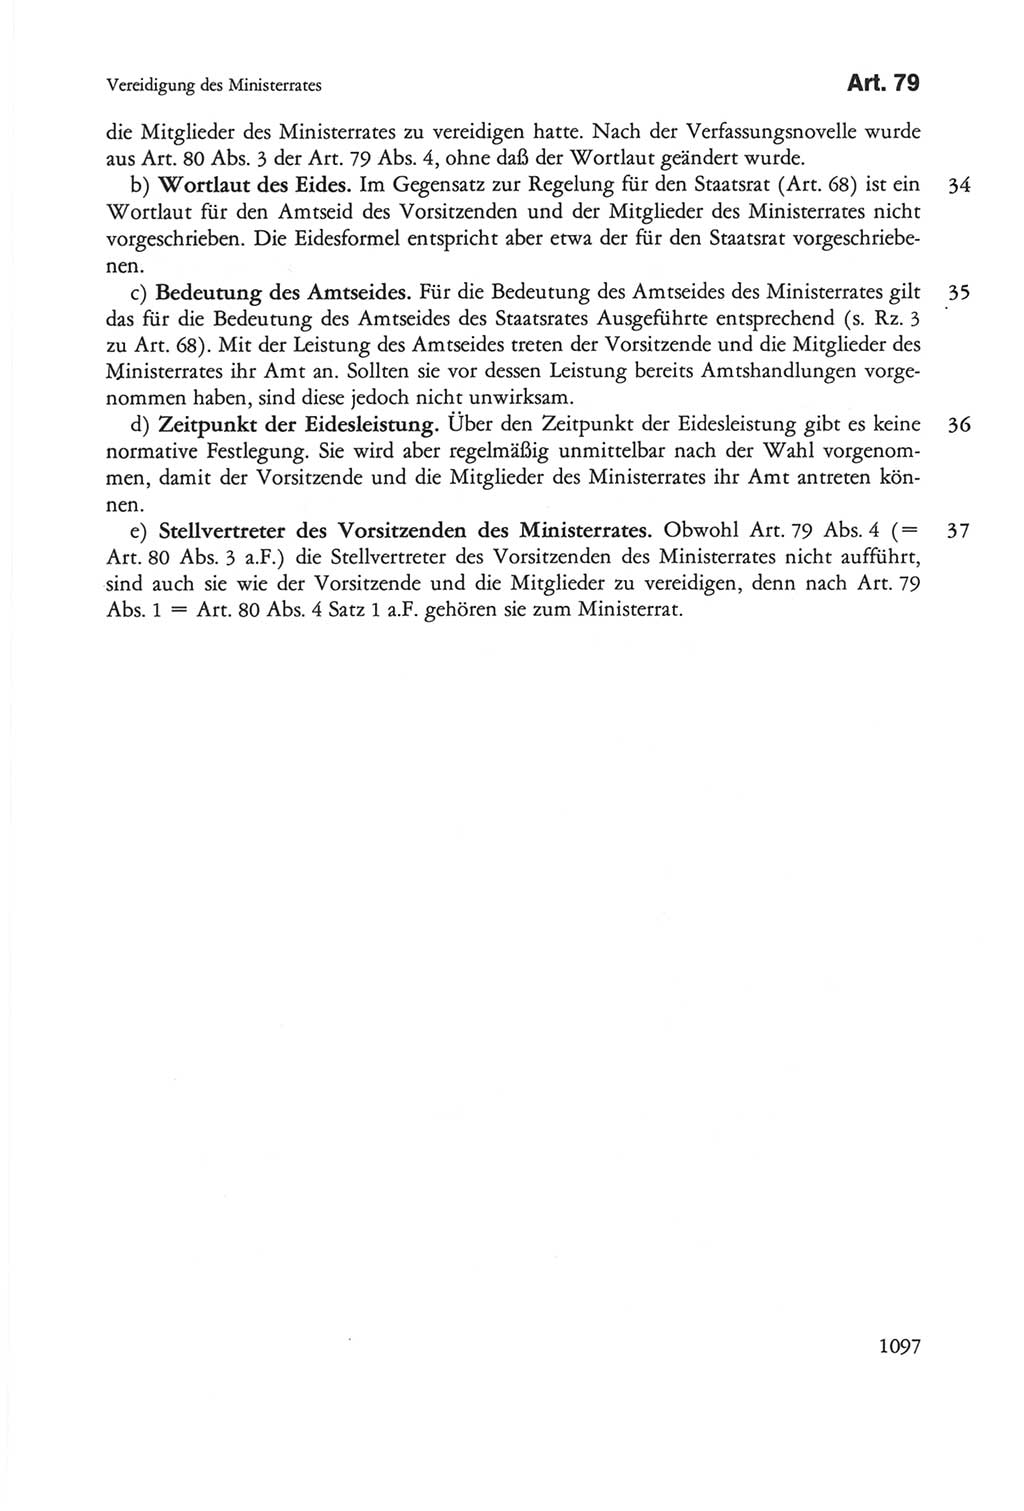 Die sozialistische Verfassung der Deutschen Demokratischen Republik (DDR), Kommentar 1982, Seite 1097 (Soz. Verf. DDR Komm. 1982, S. 1097)